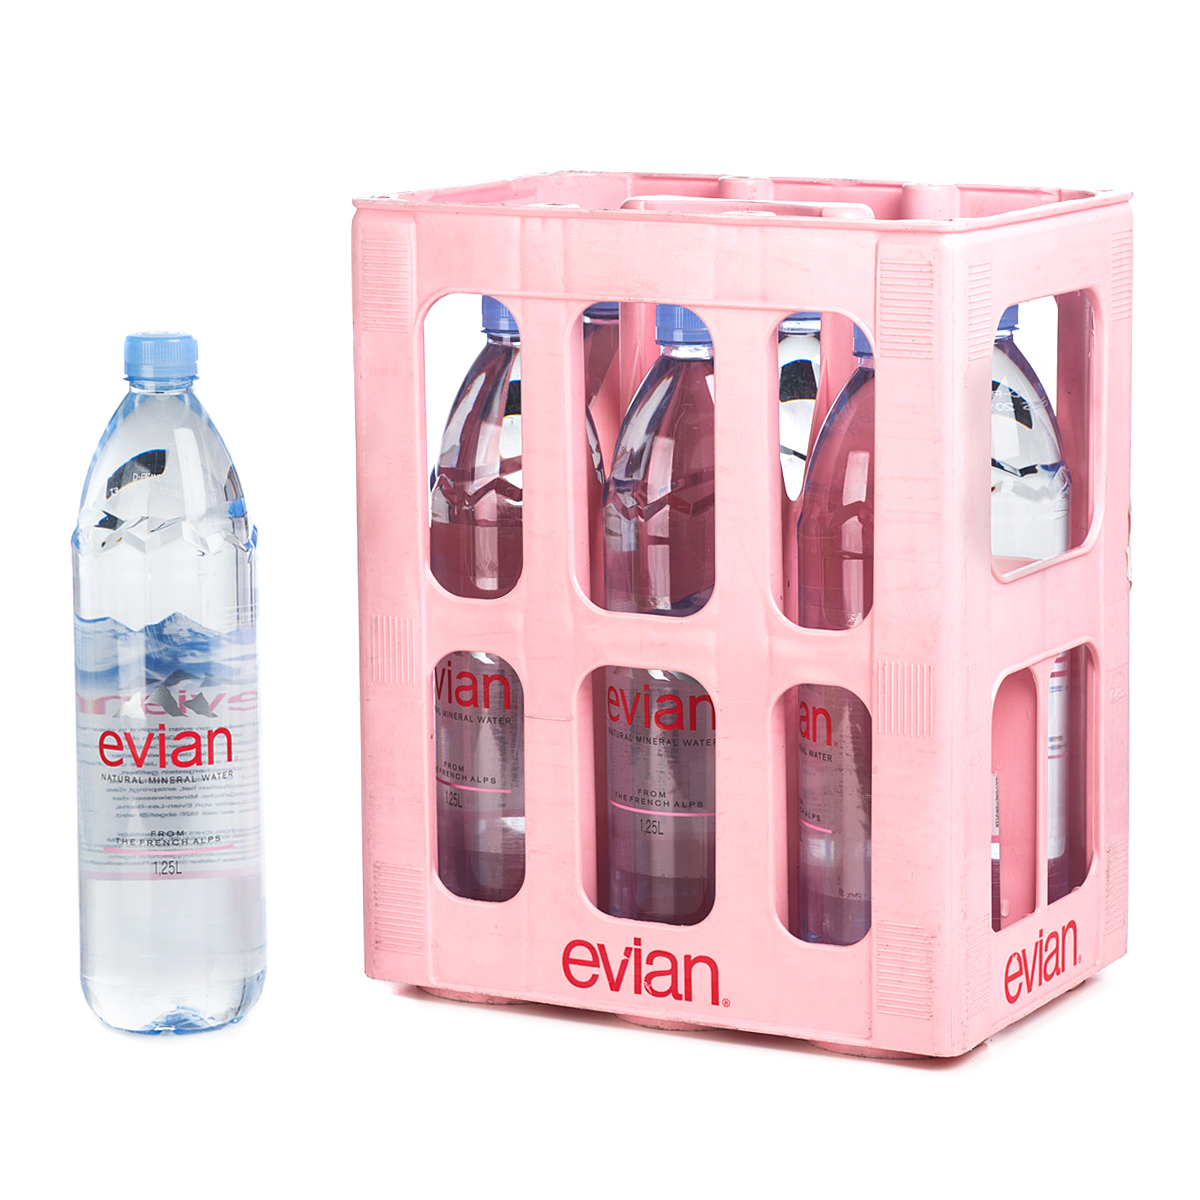 Evian Mineralwasser Still Kasten 6 x 1,25 l PET Einweg